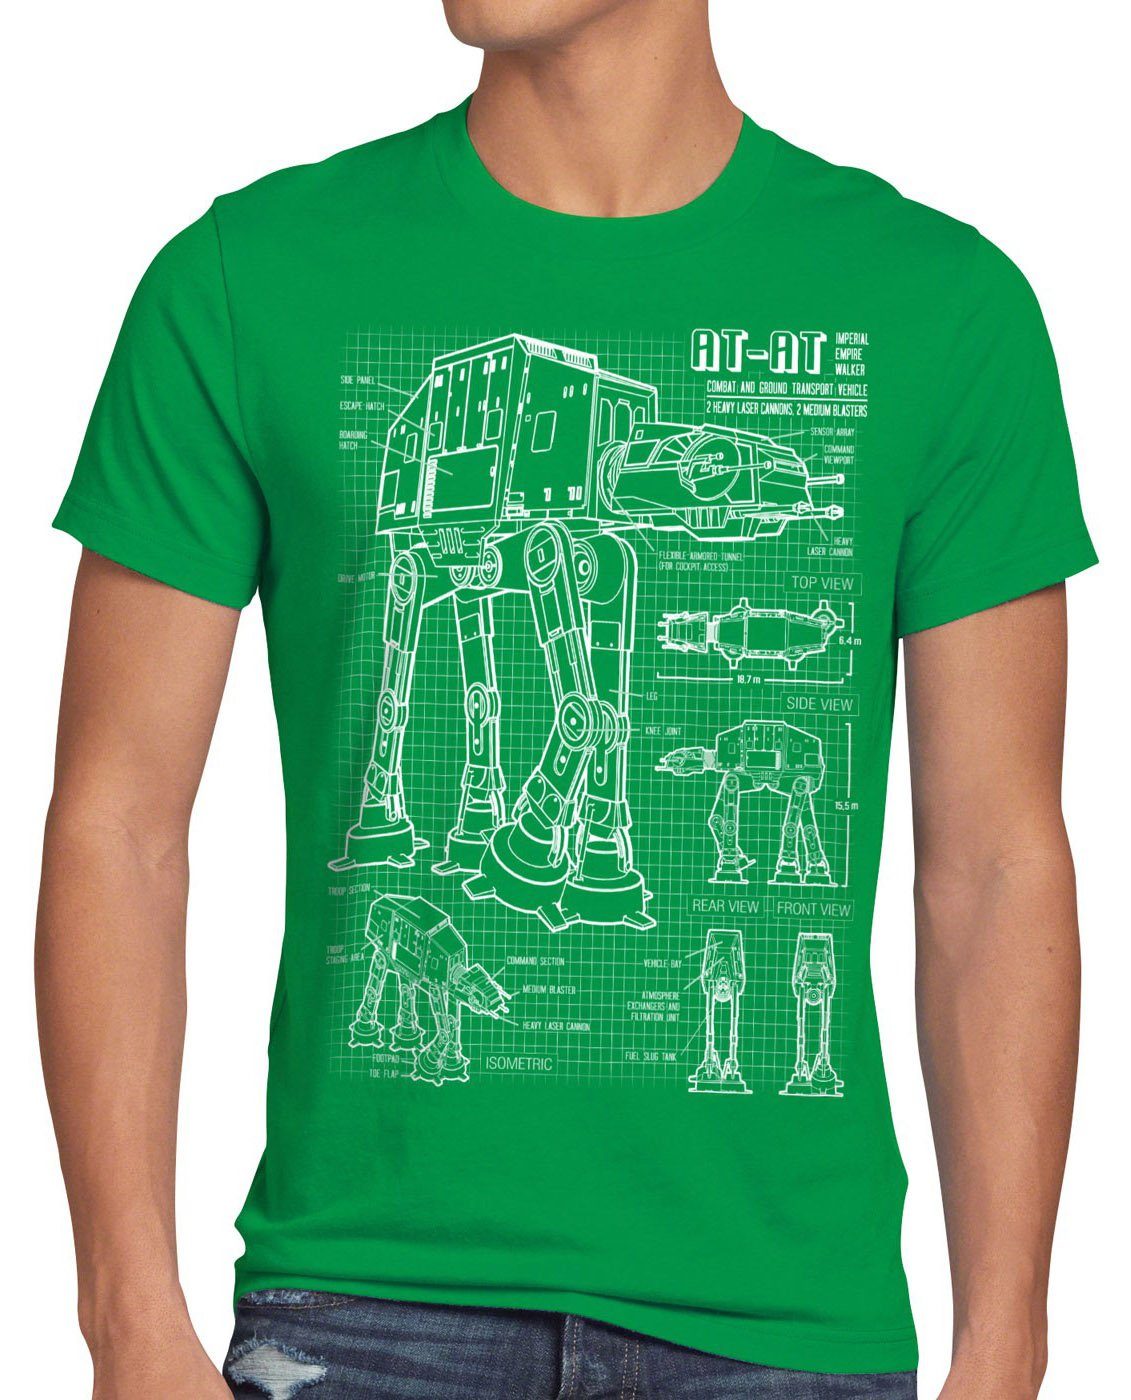 premium style3 Print-Shirt Herren T-Shirt AT-AT vader krieg grün wars imperium walker sterne star der blaupause